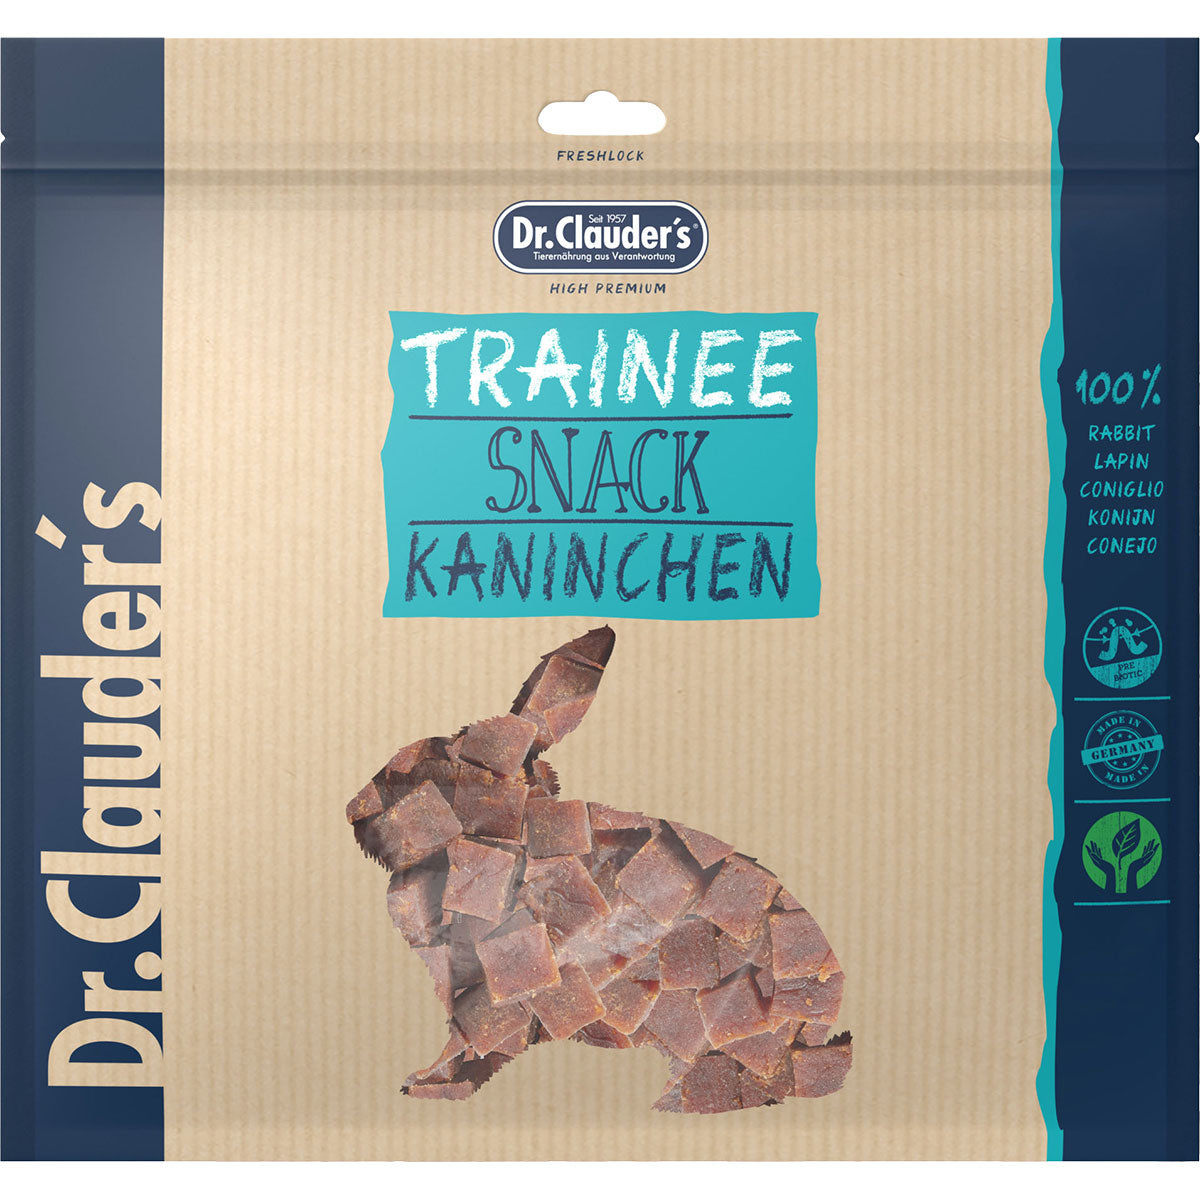 Dr. Clauders Trainee Snack Kaninchenfleisch, 500g